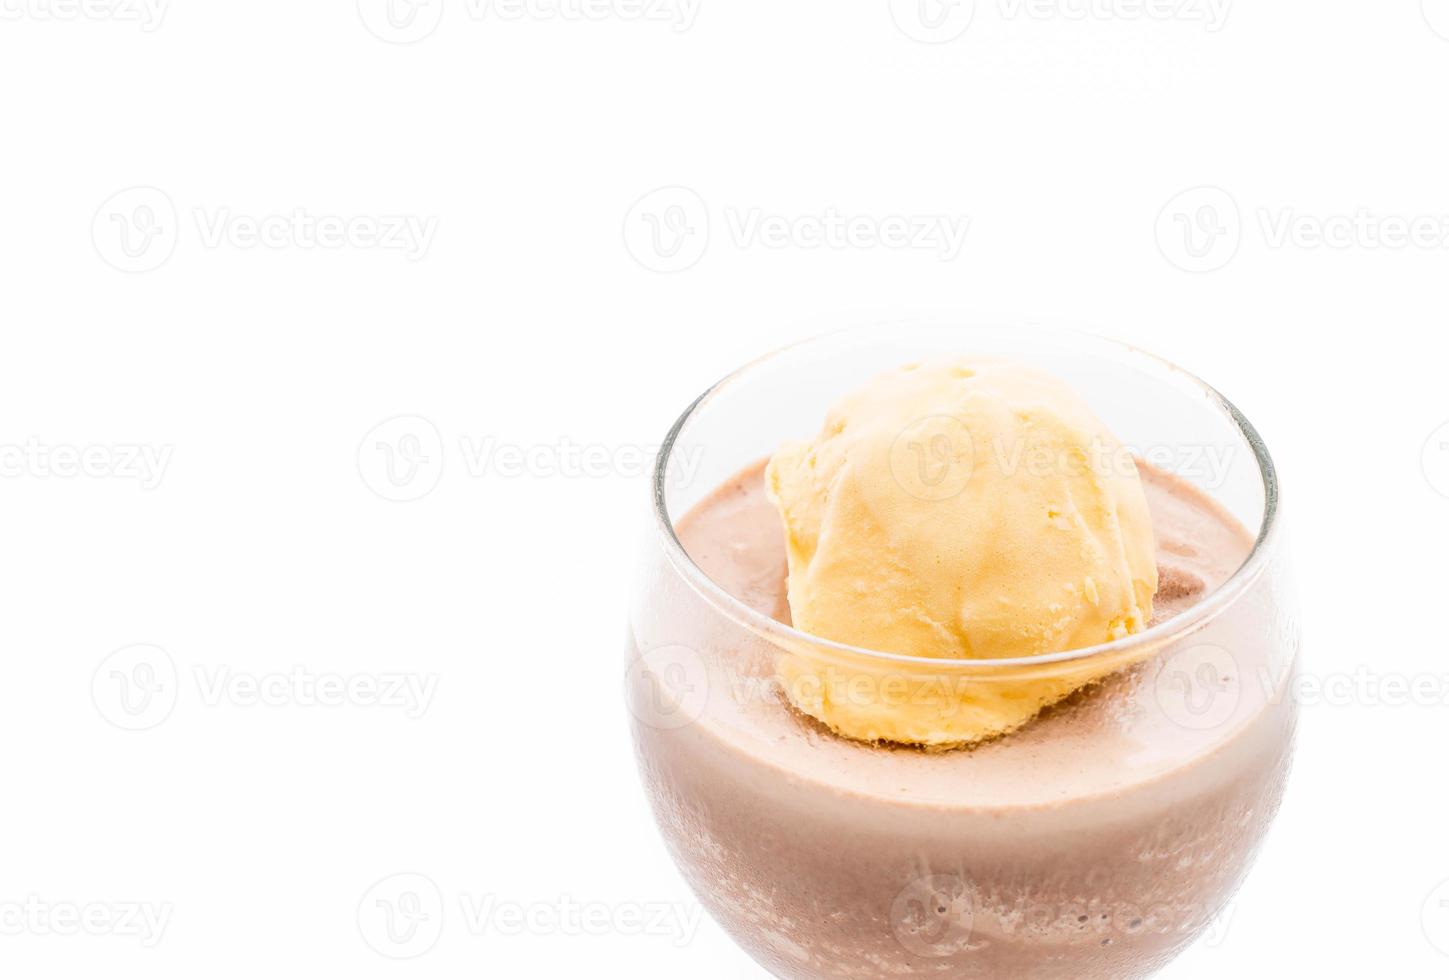 chocolade frappe met vanille ijs erop foto